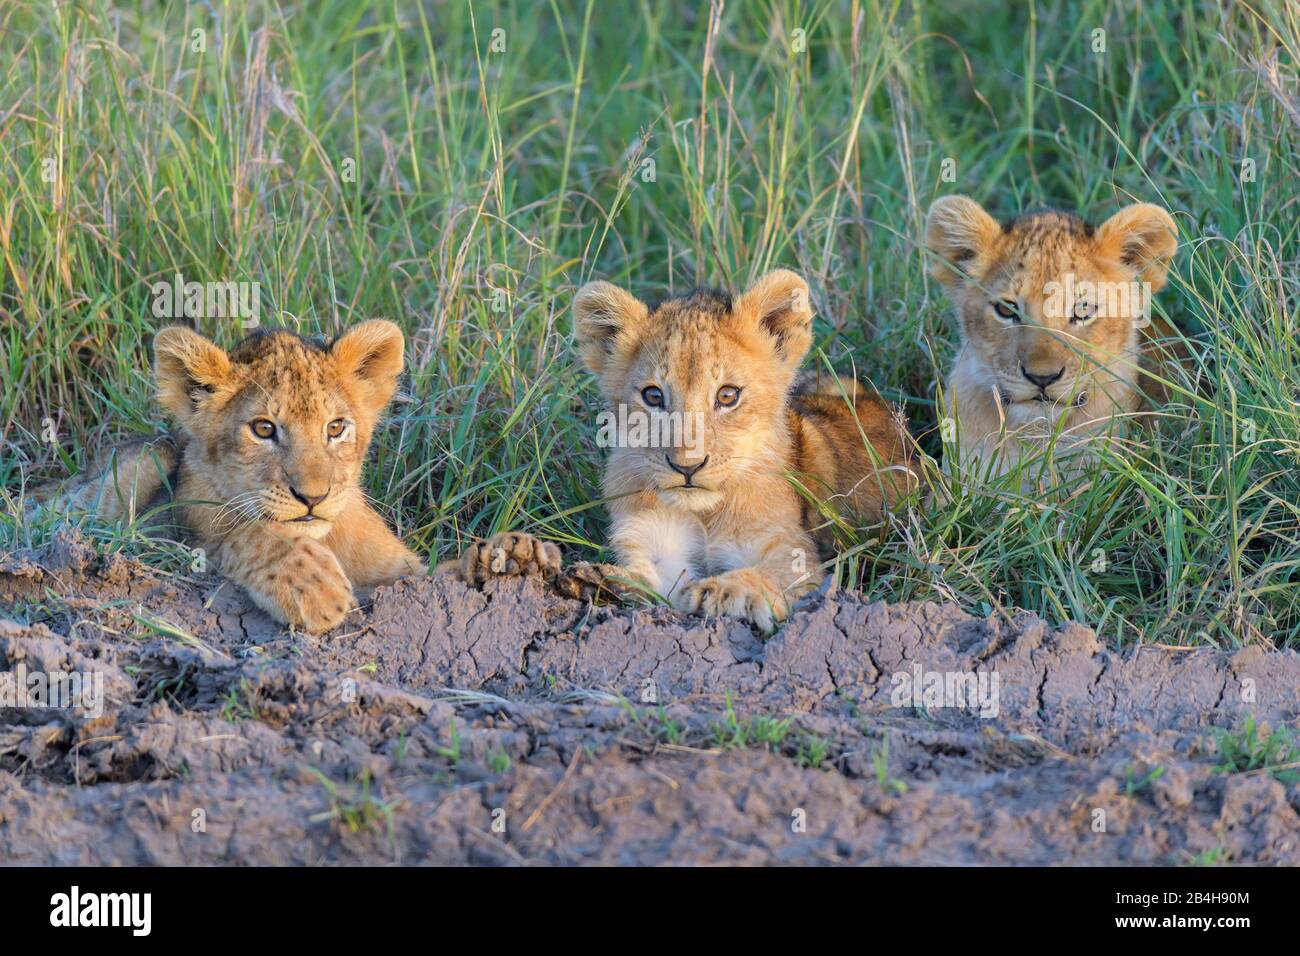 African lion, Panthera Leo, three cubs, Masai Mara National Reserve, Kenya, Africa Stock Photo